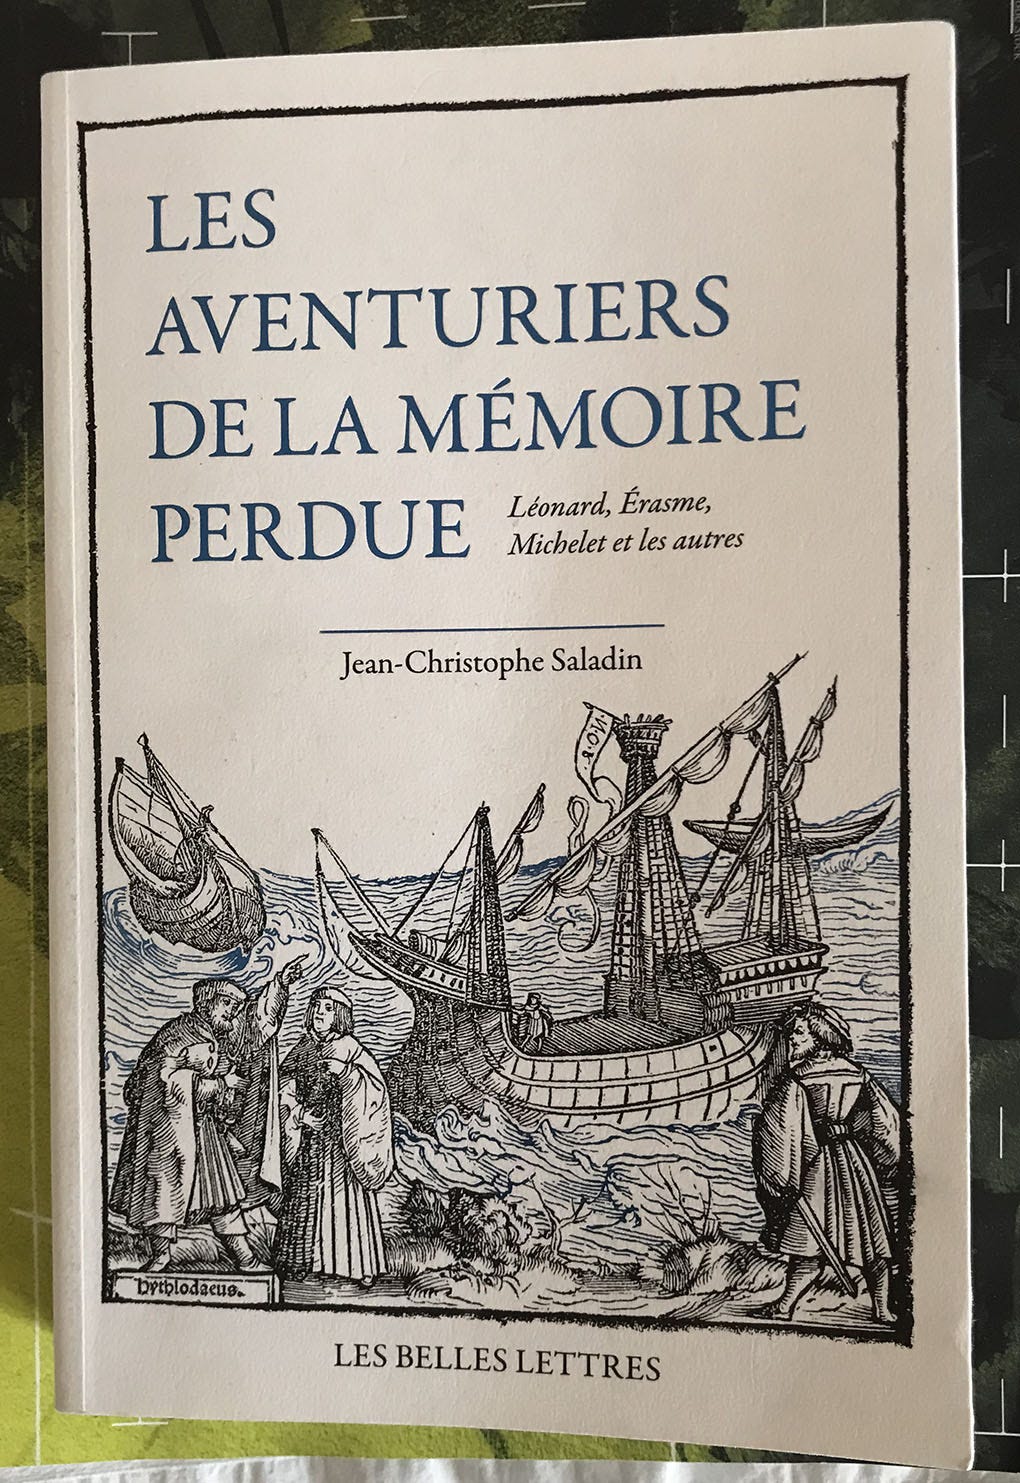 Couverture du livre Les aventuriers de la mémoire perdue; titre, nom d’éditeur et d’auteur; image de déchargement d’un bateau au XVe siècle